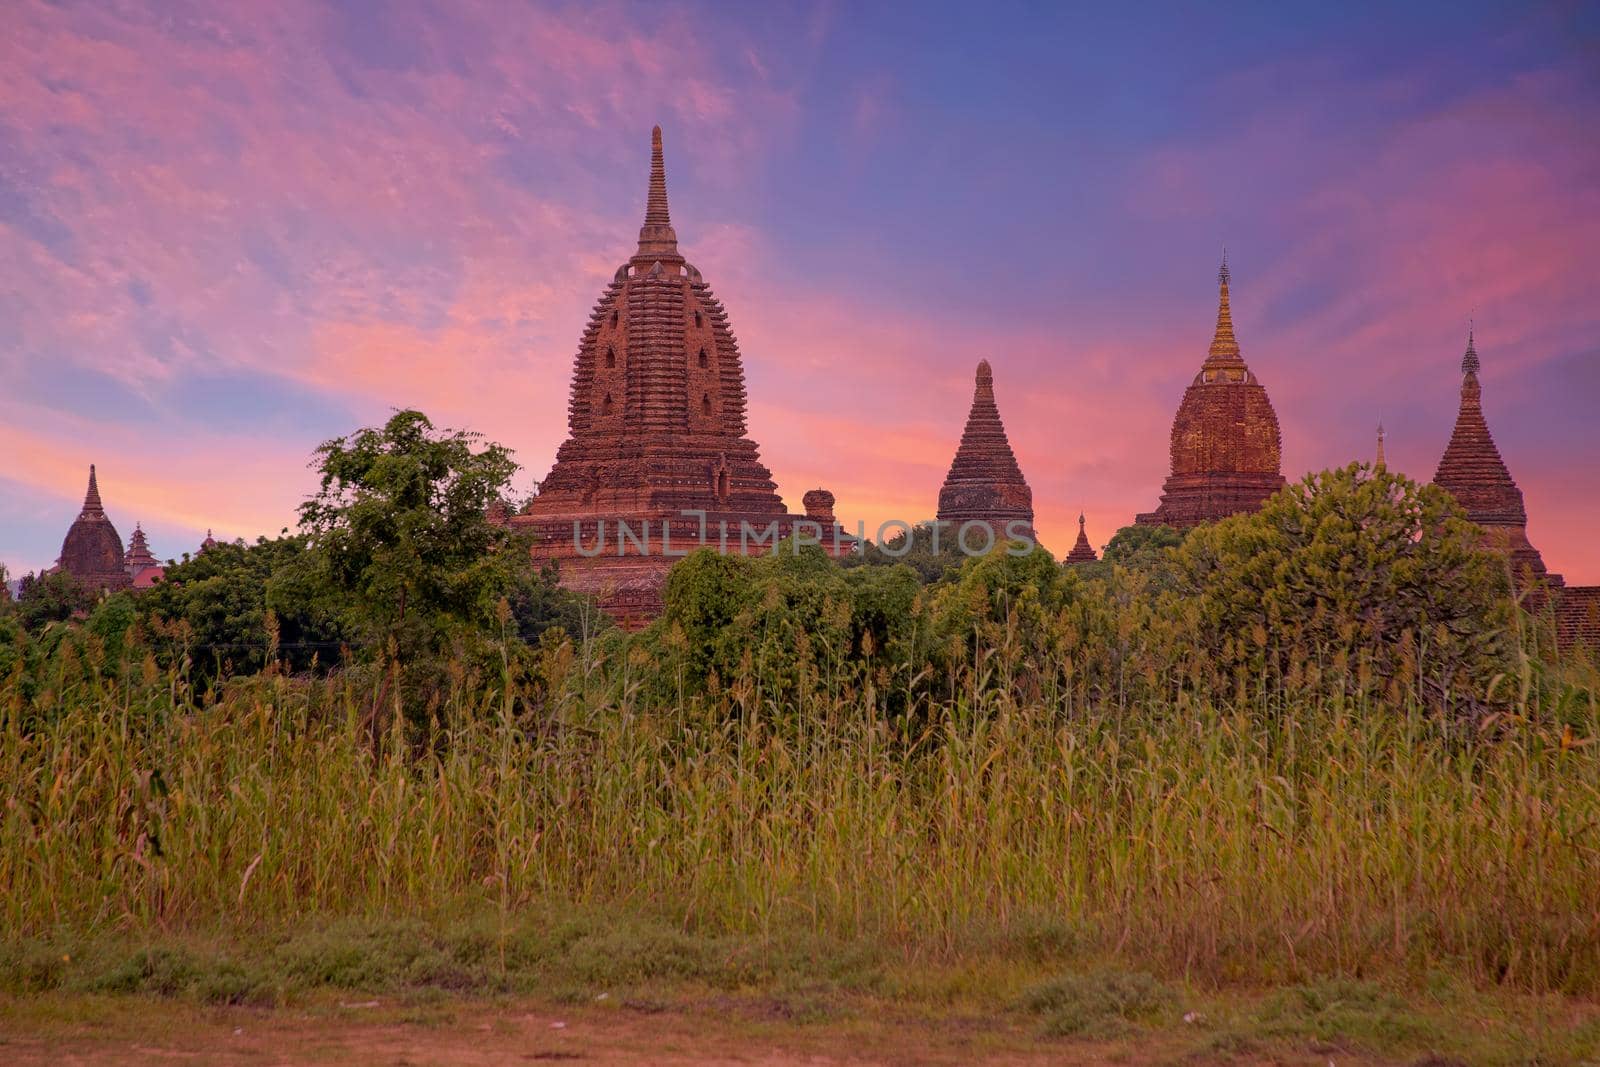 Ancient Temples in Bagan, Myanmar at sunset